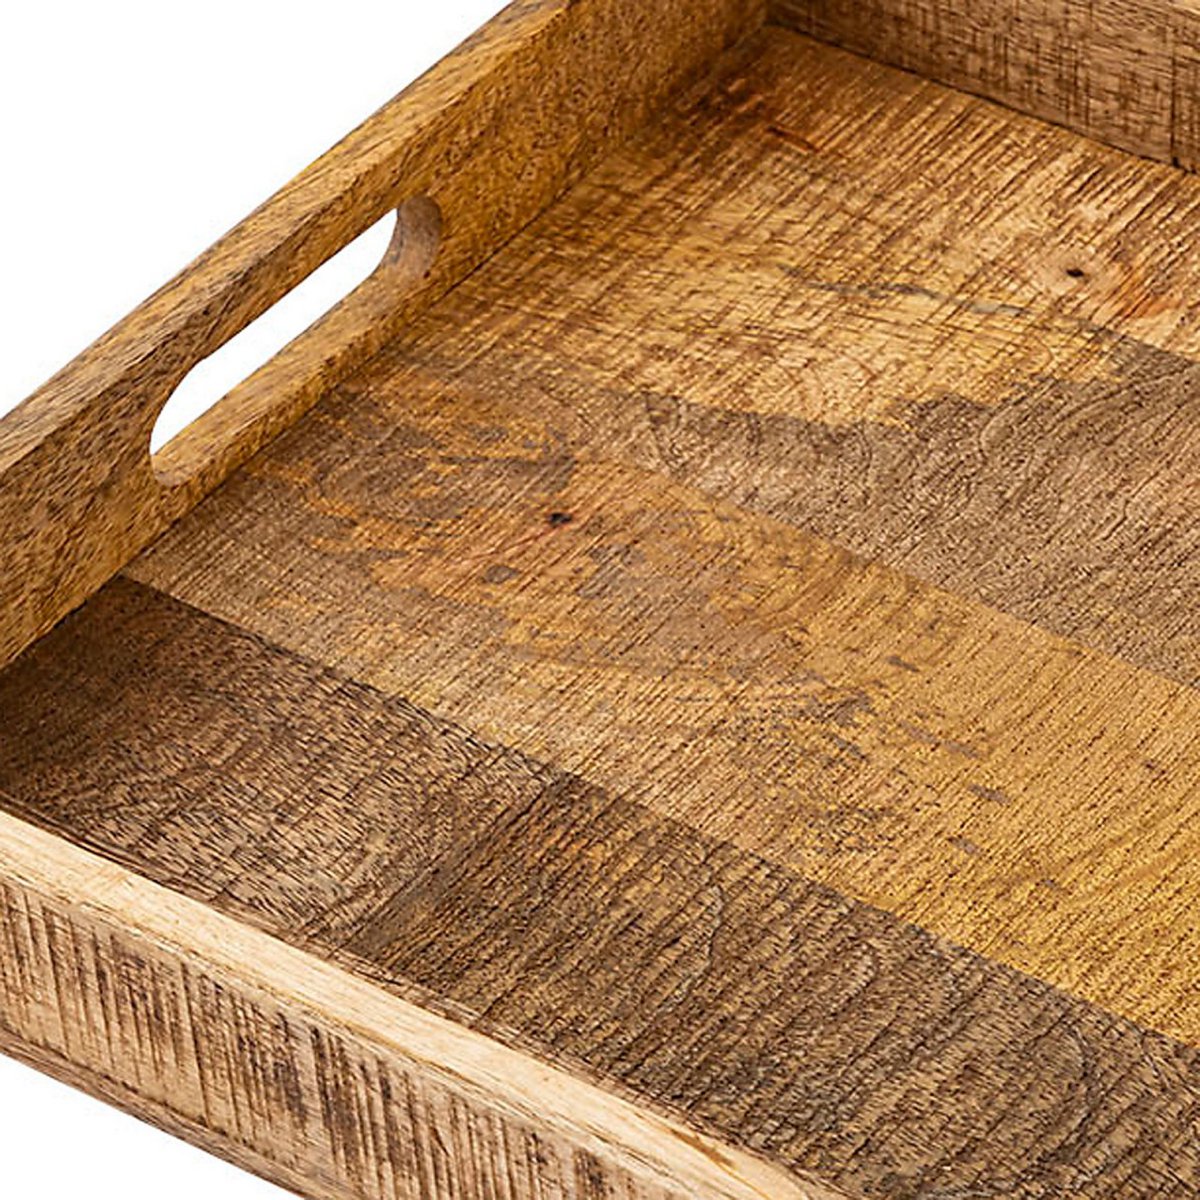 Holztablett Serviertablett 40x40cm Tablett Holz Serviertablett Deko Tablett quadratisch aus Mangohol